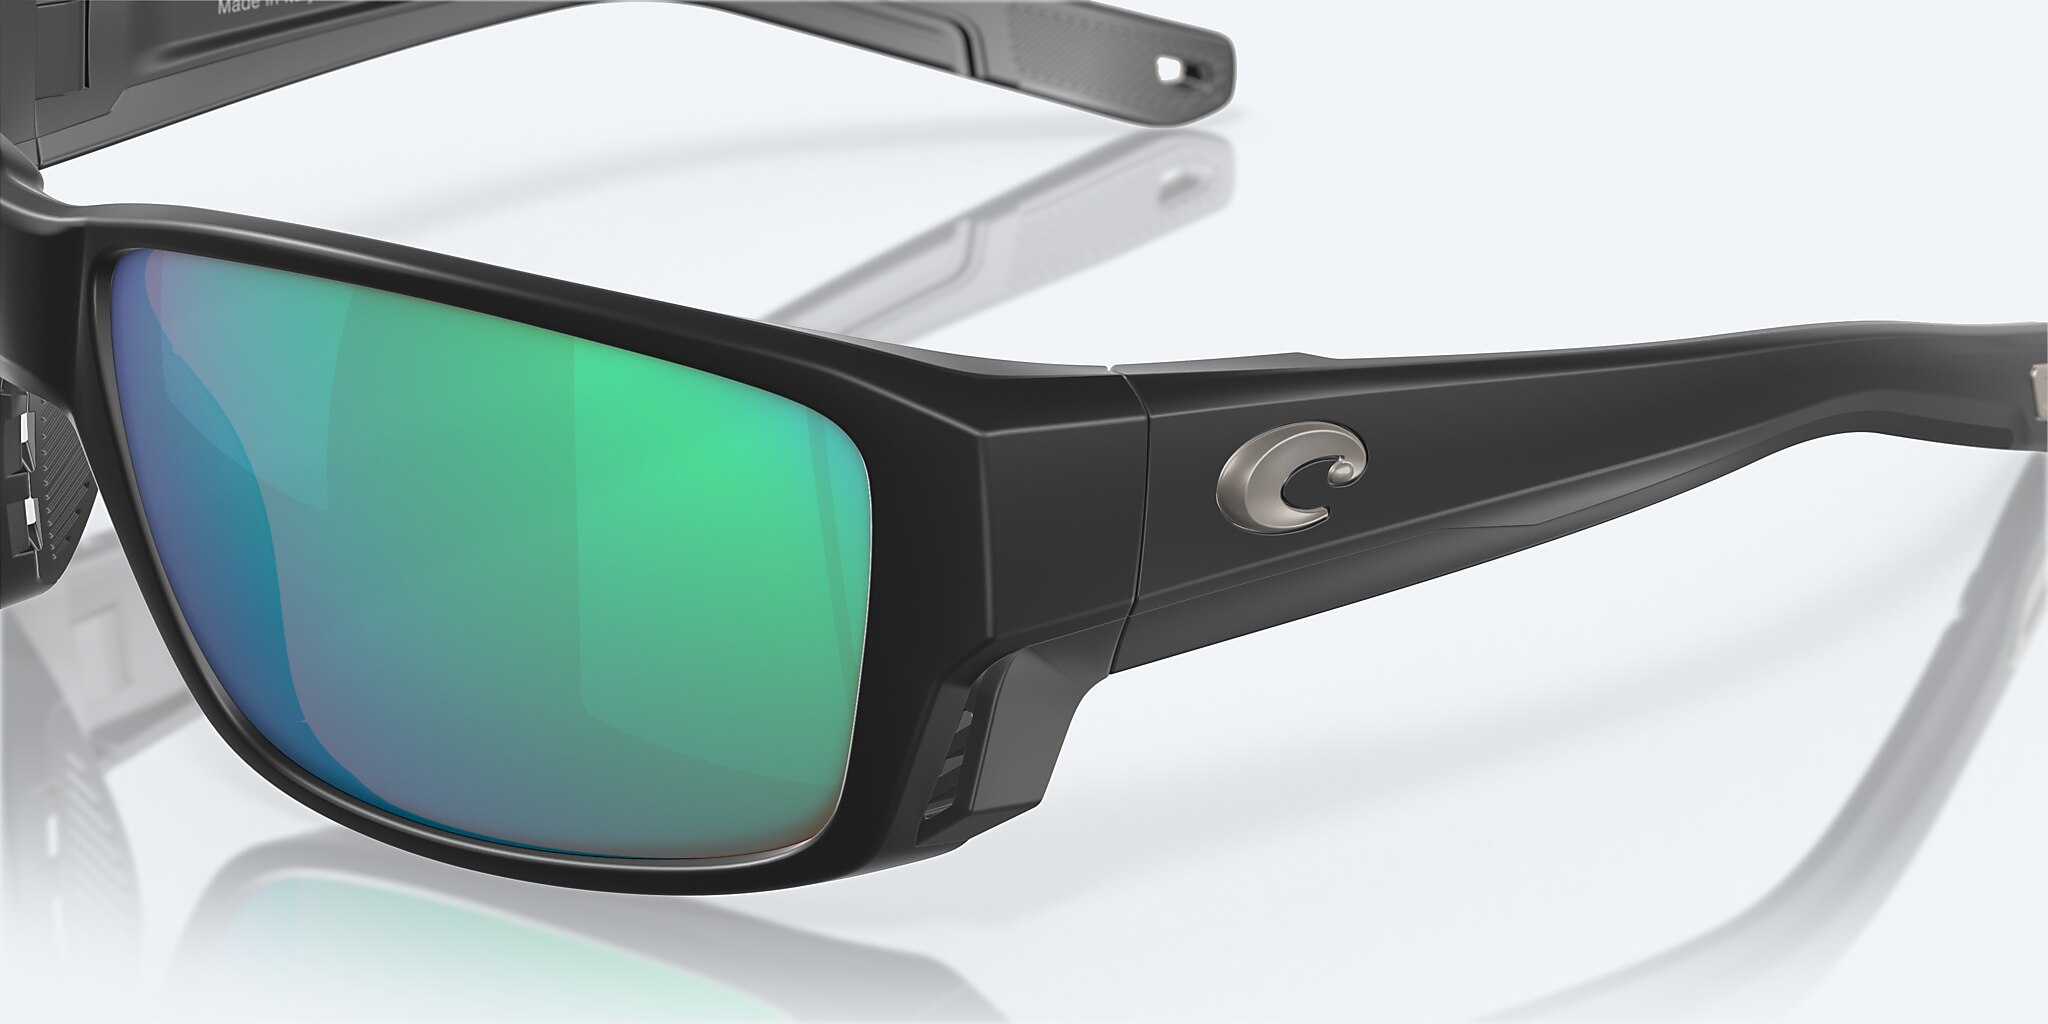 Costa Del Mar Tuna Alley Pro Sunglasses Matte Black Green Mirror 580g